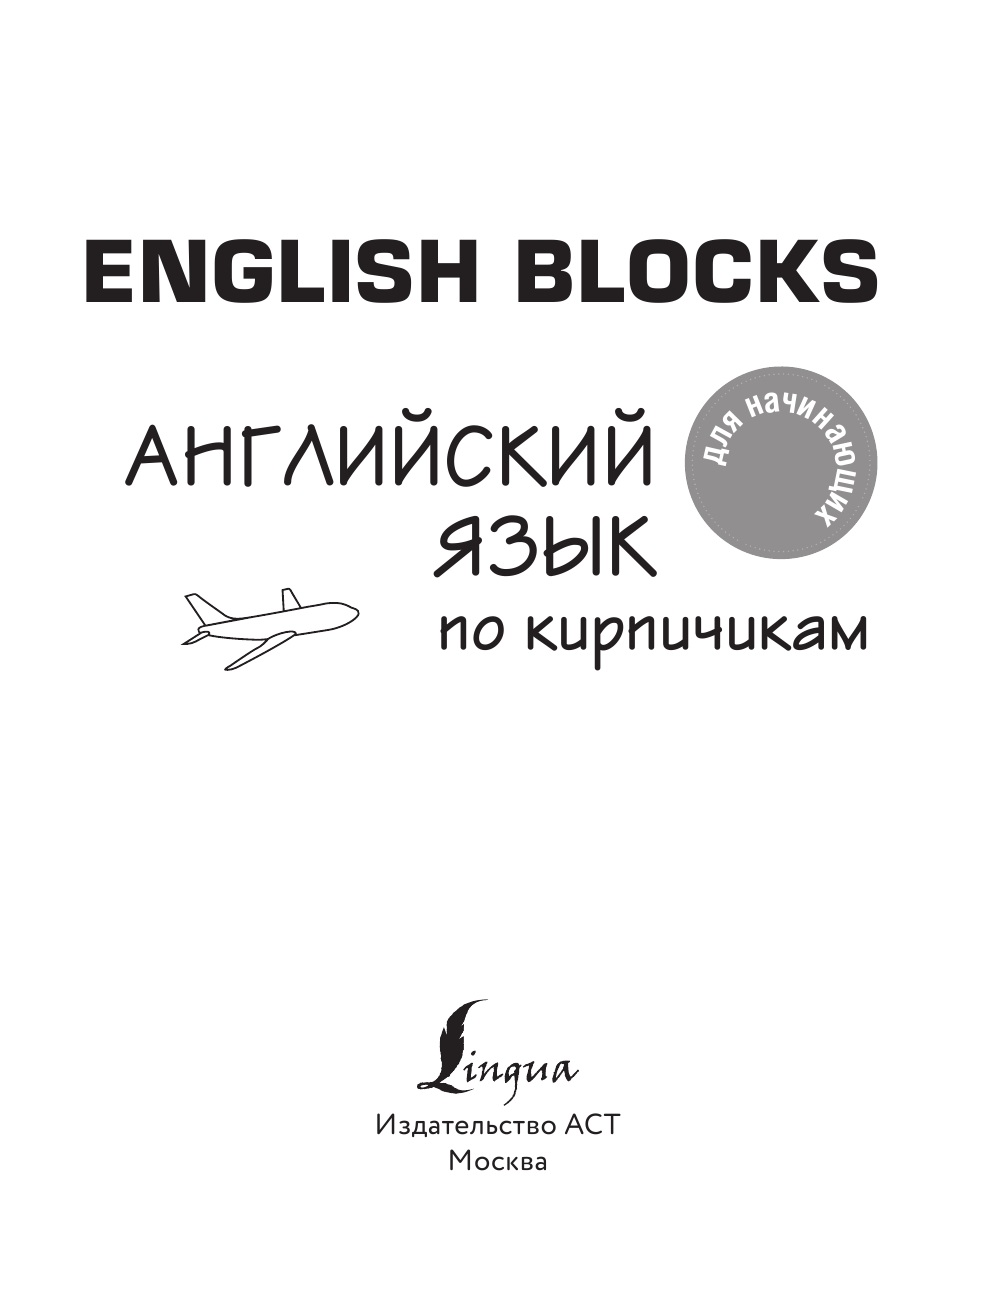 Горбачев Игорь Викторович English Blocks. Английский язык по кирпичикам. Для начинающих - страница 2